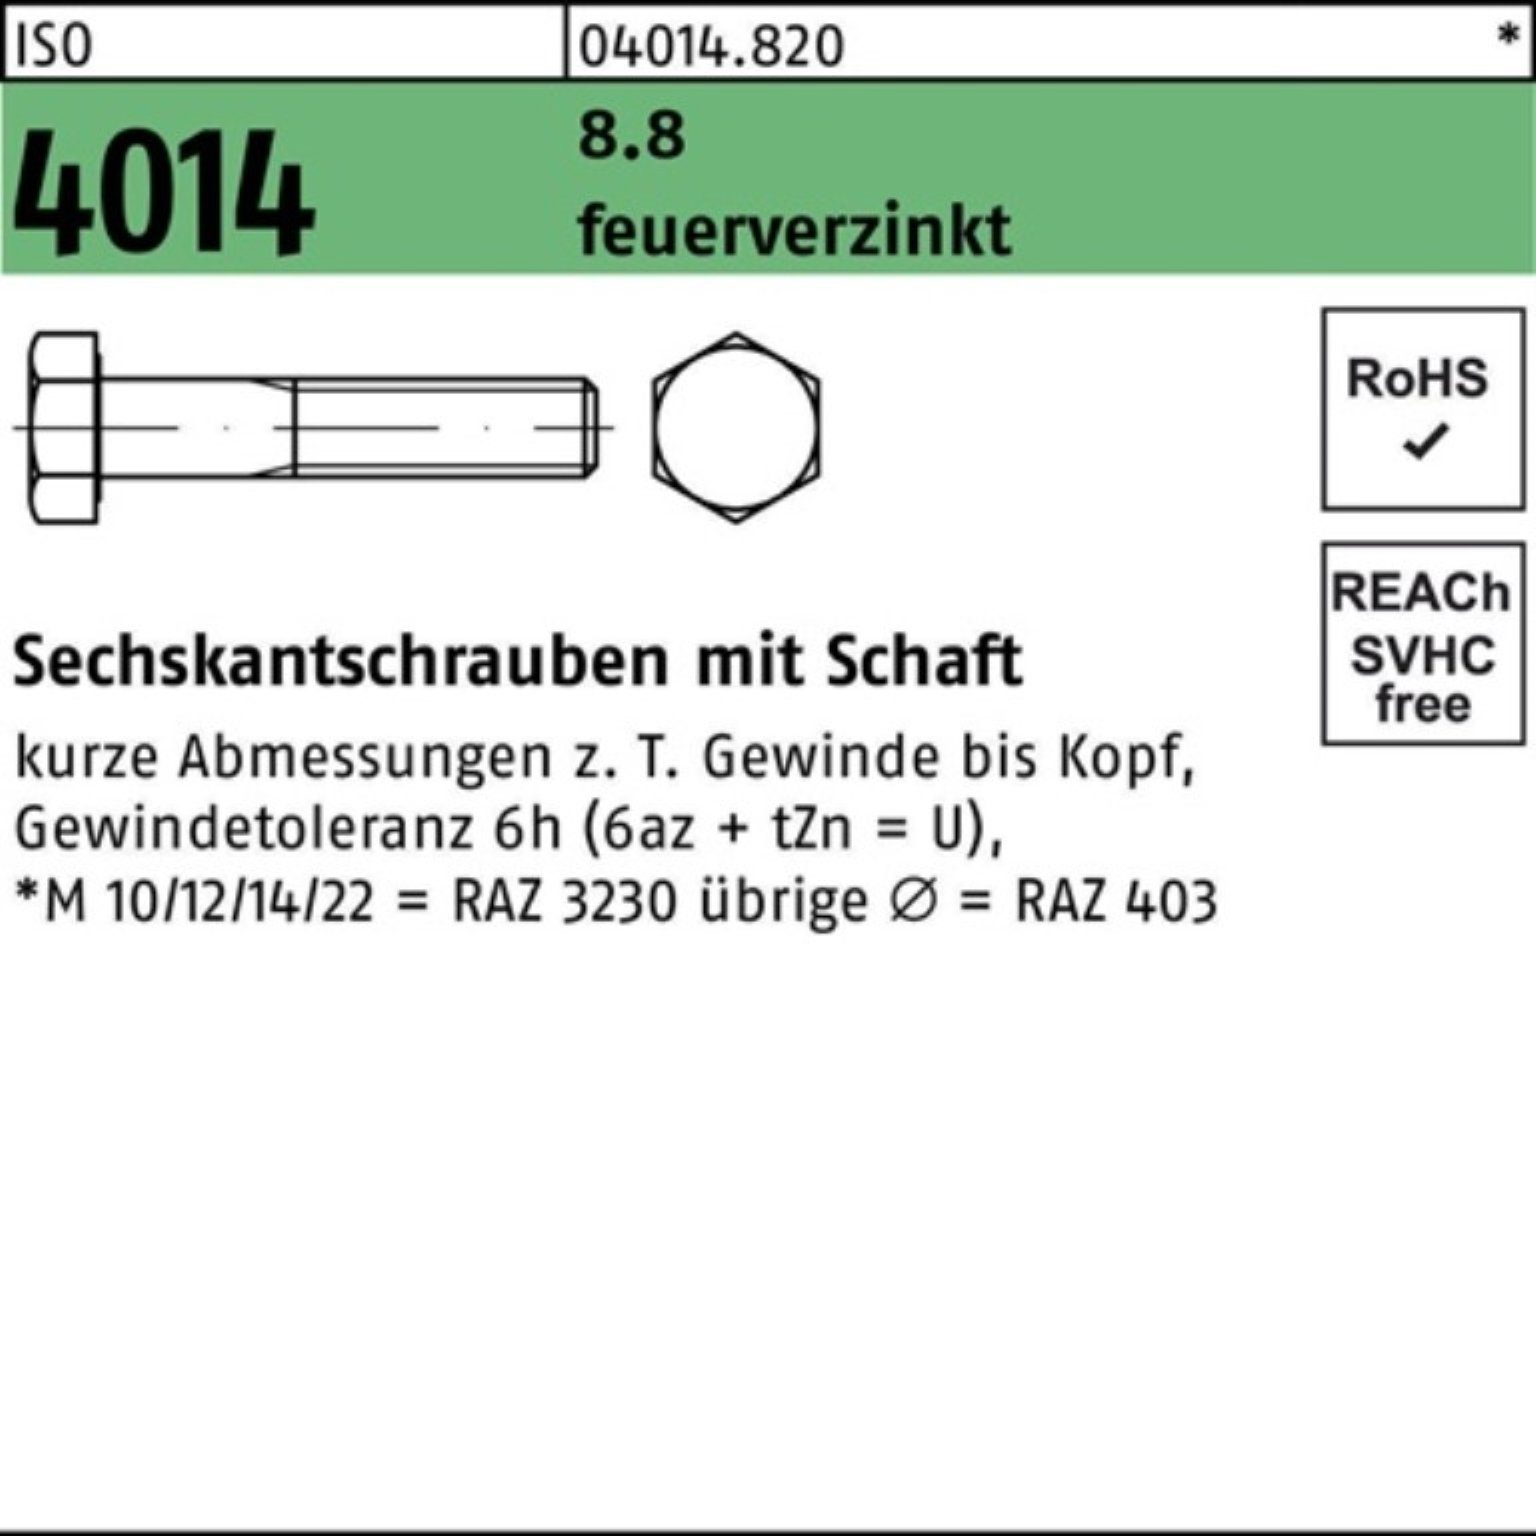 Bufab Sechskantschraube 100er Pack Sechskantschraube ISO 4014 Schaft M36x 130 8.8 feuerverz. 1